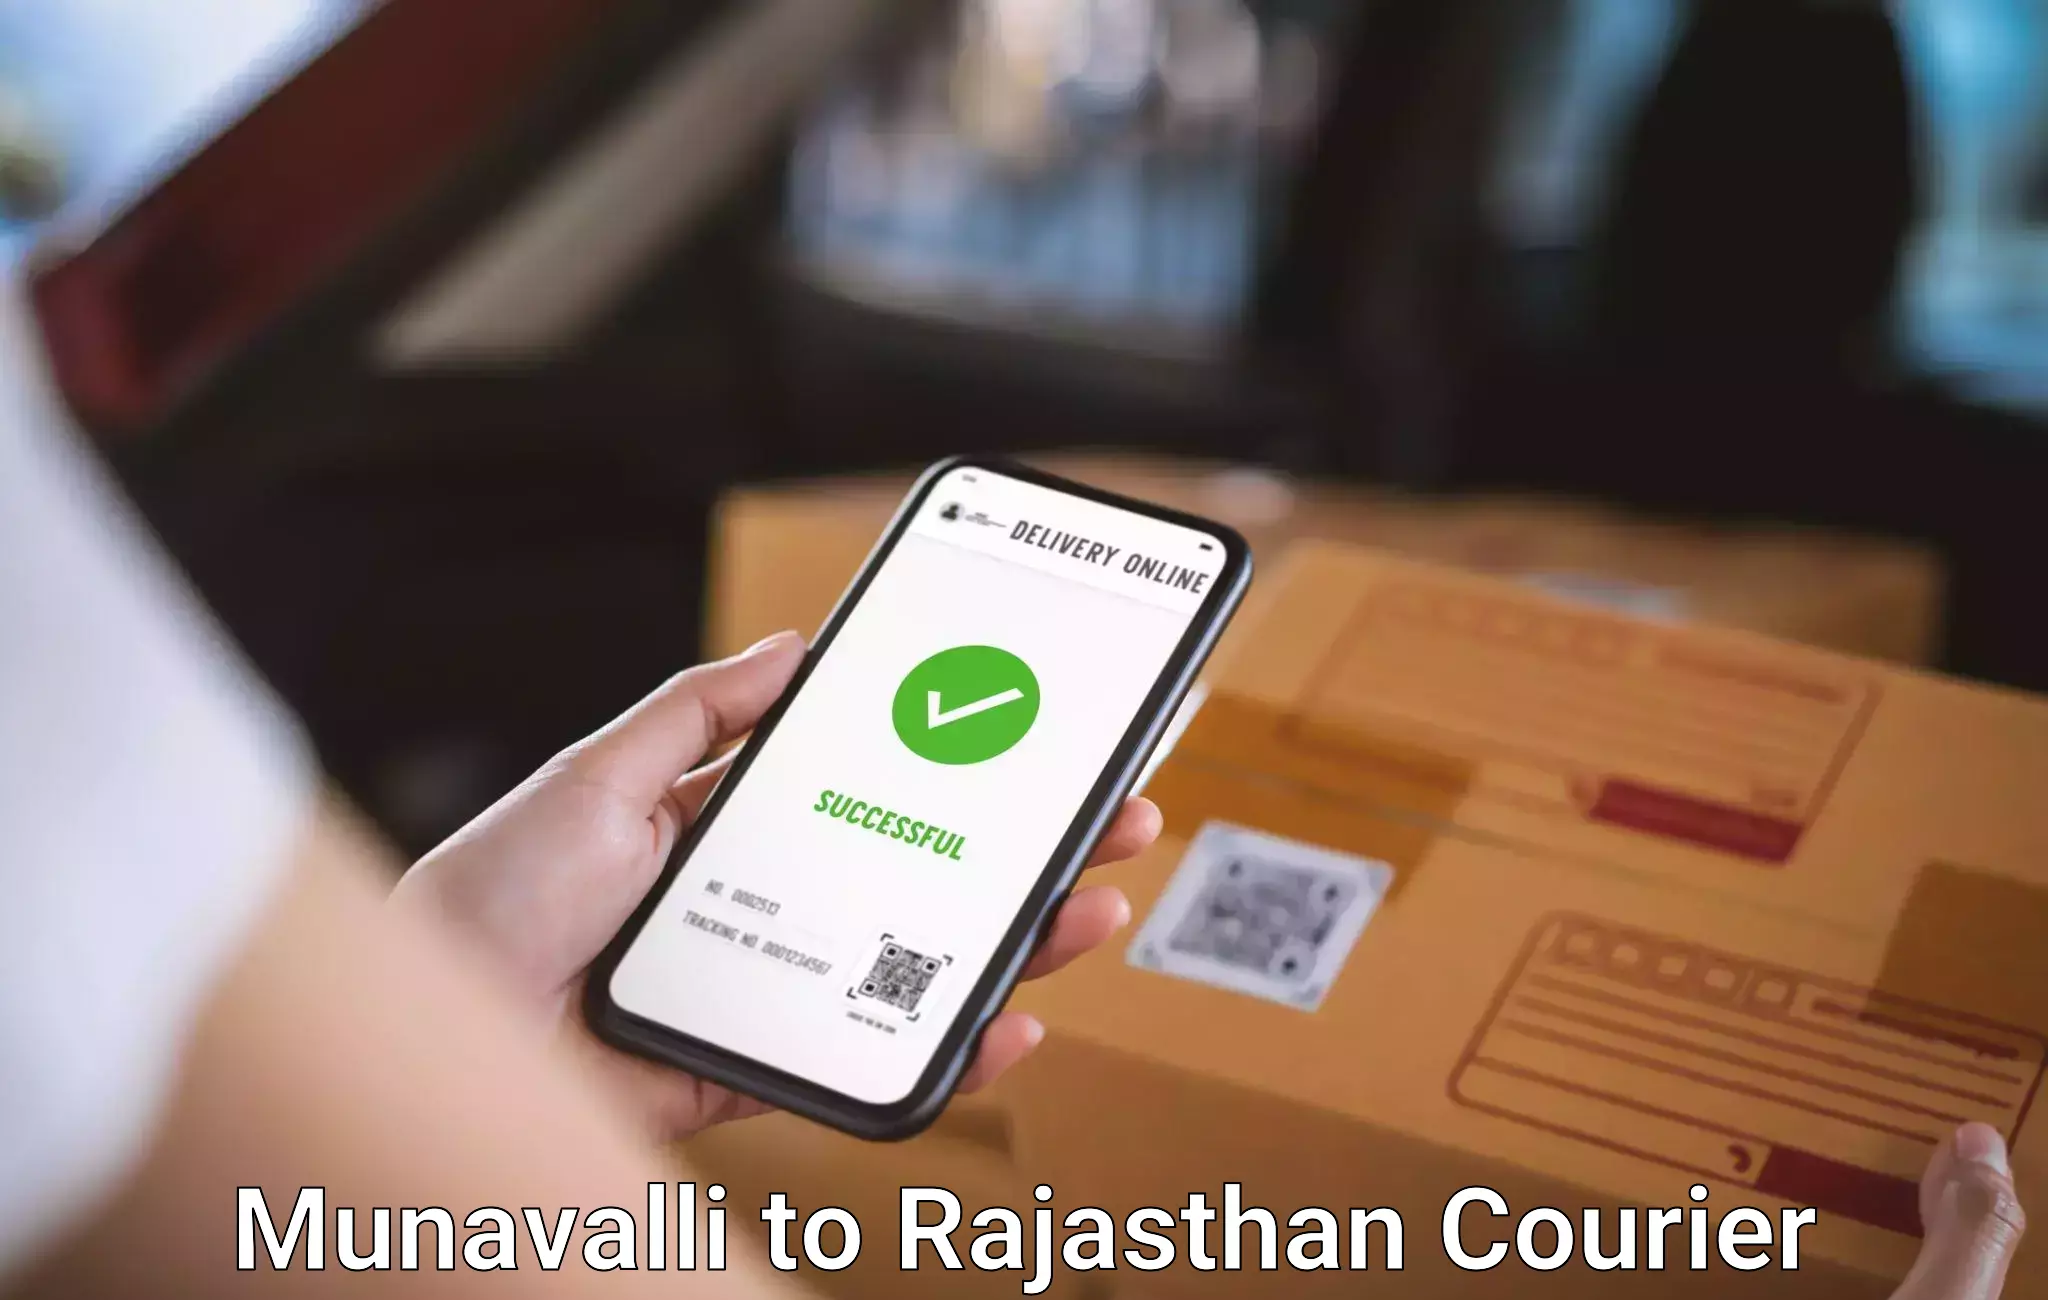 Luggage dispatch service Munavalli to Rajasthan